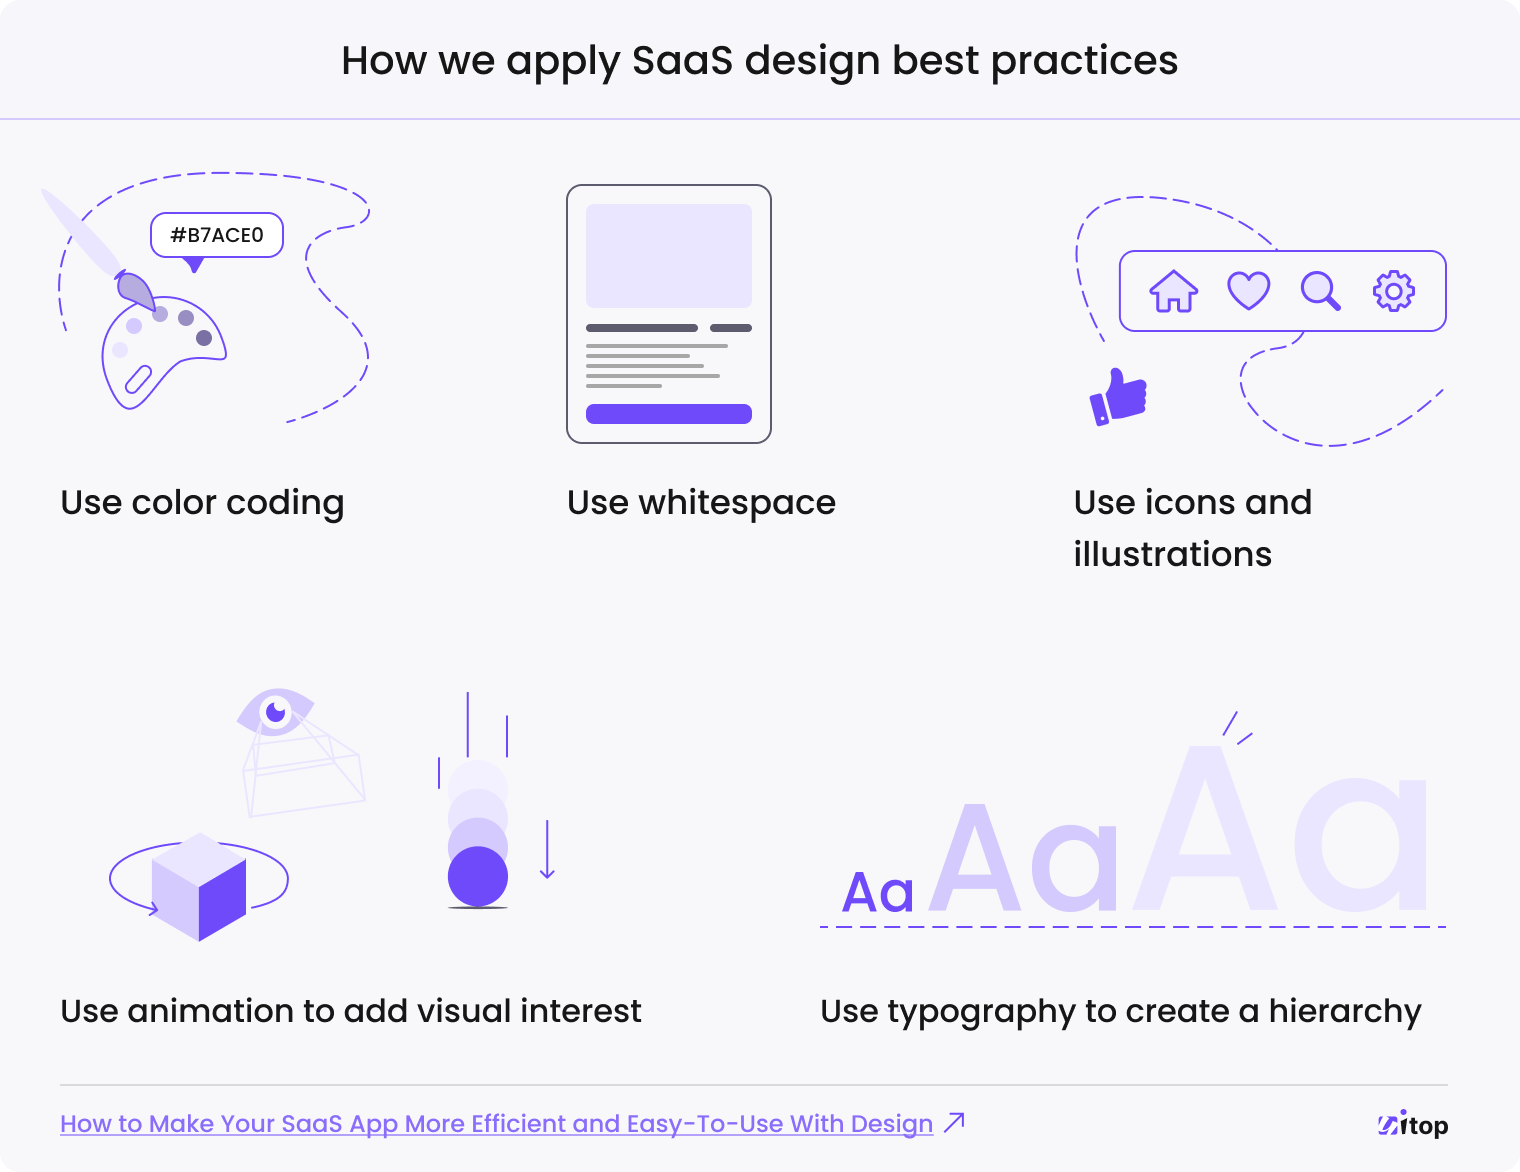 SAAS design: best practices